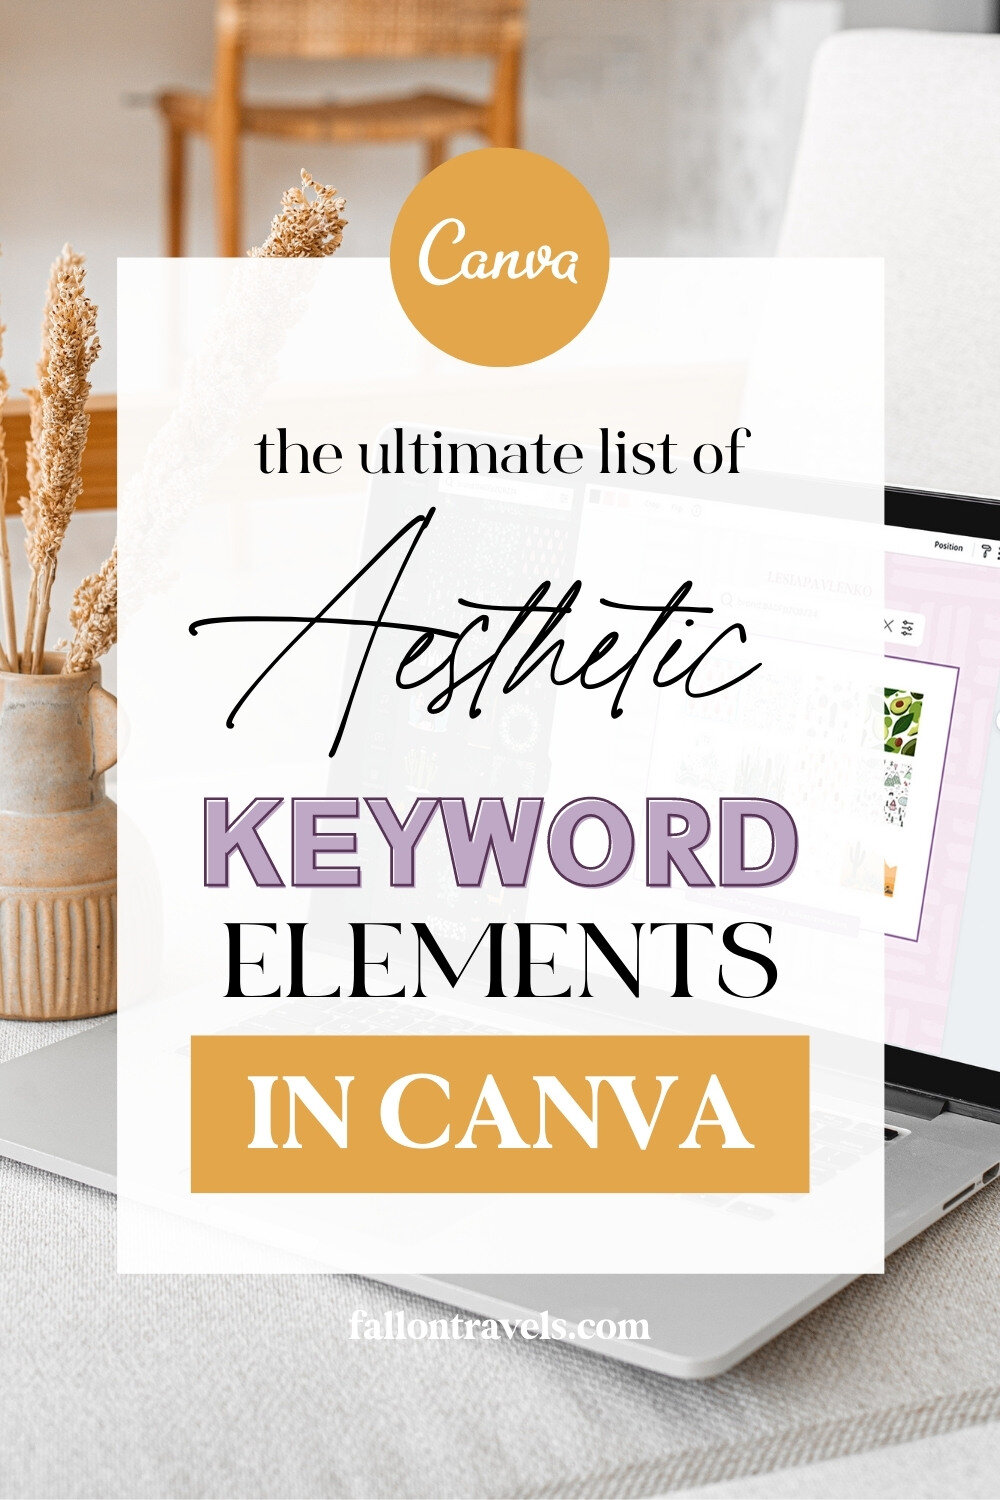 Canva Elements Keywords List